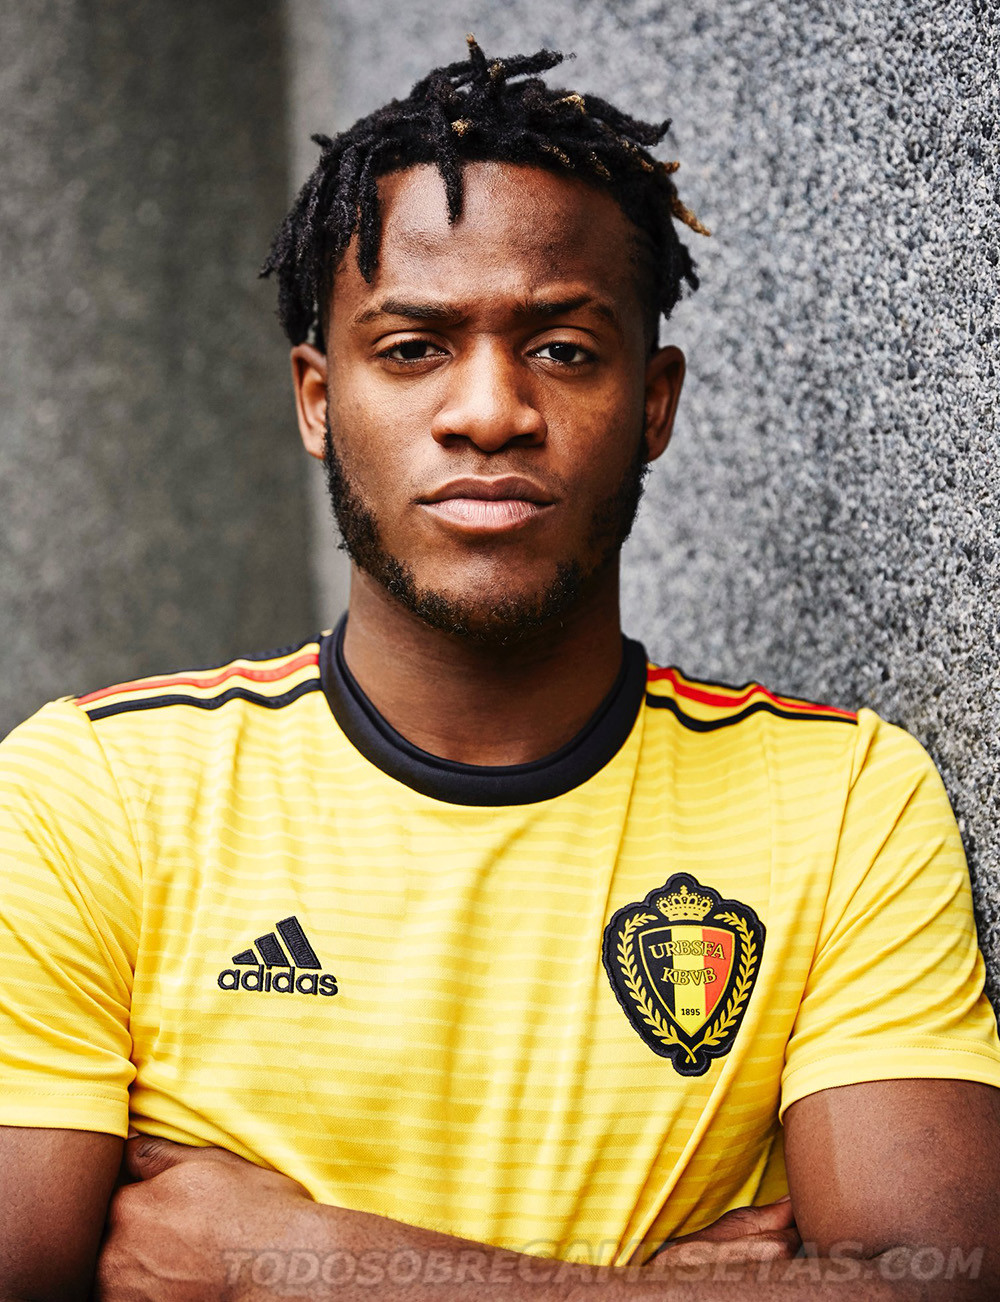 Belgium 2018 World Cup adidas away kit